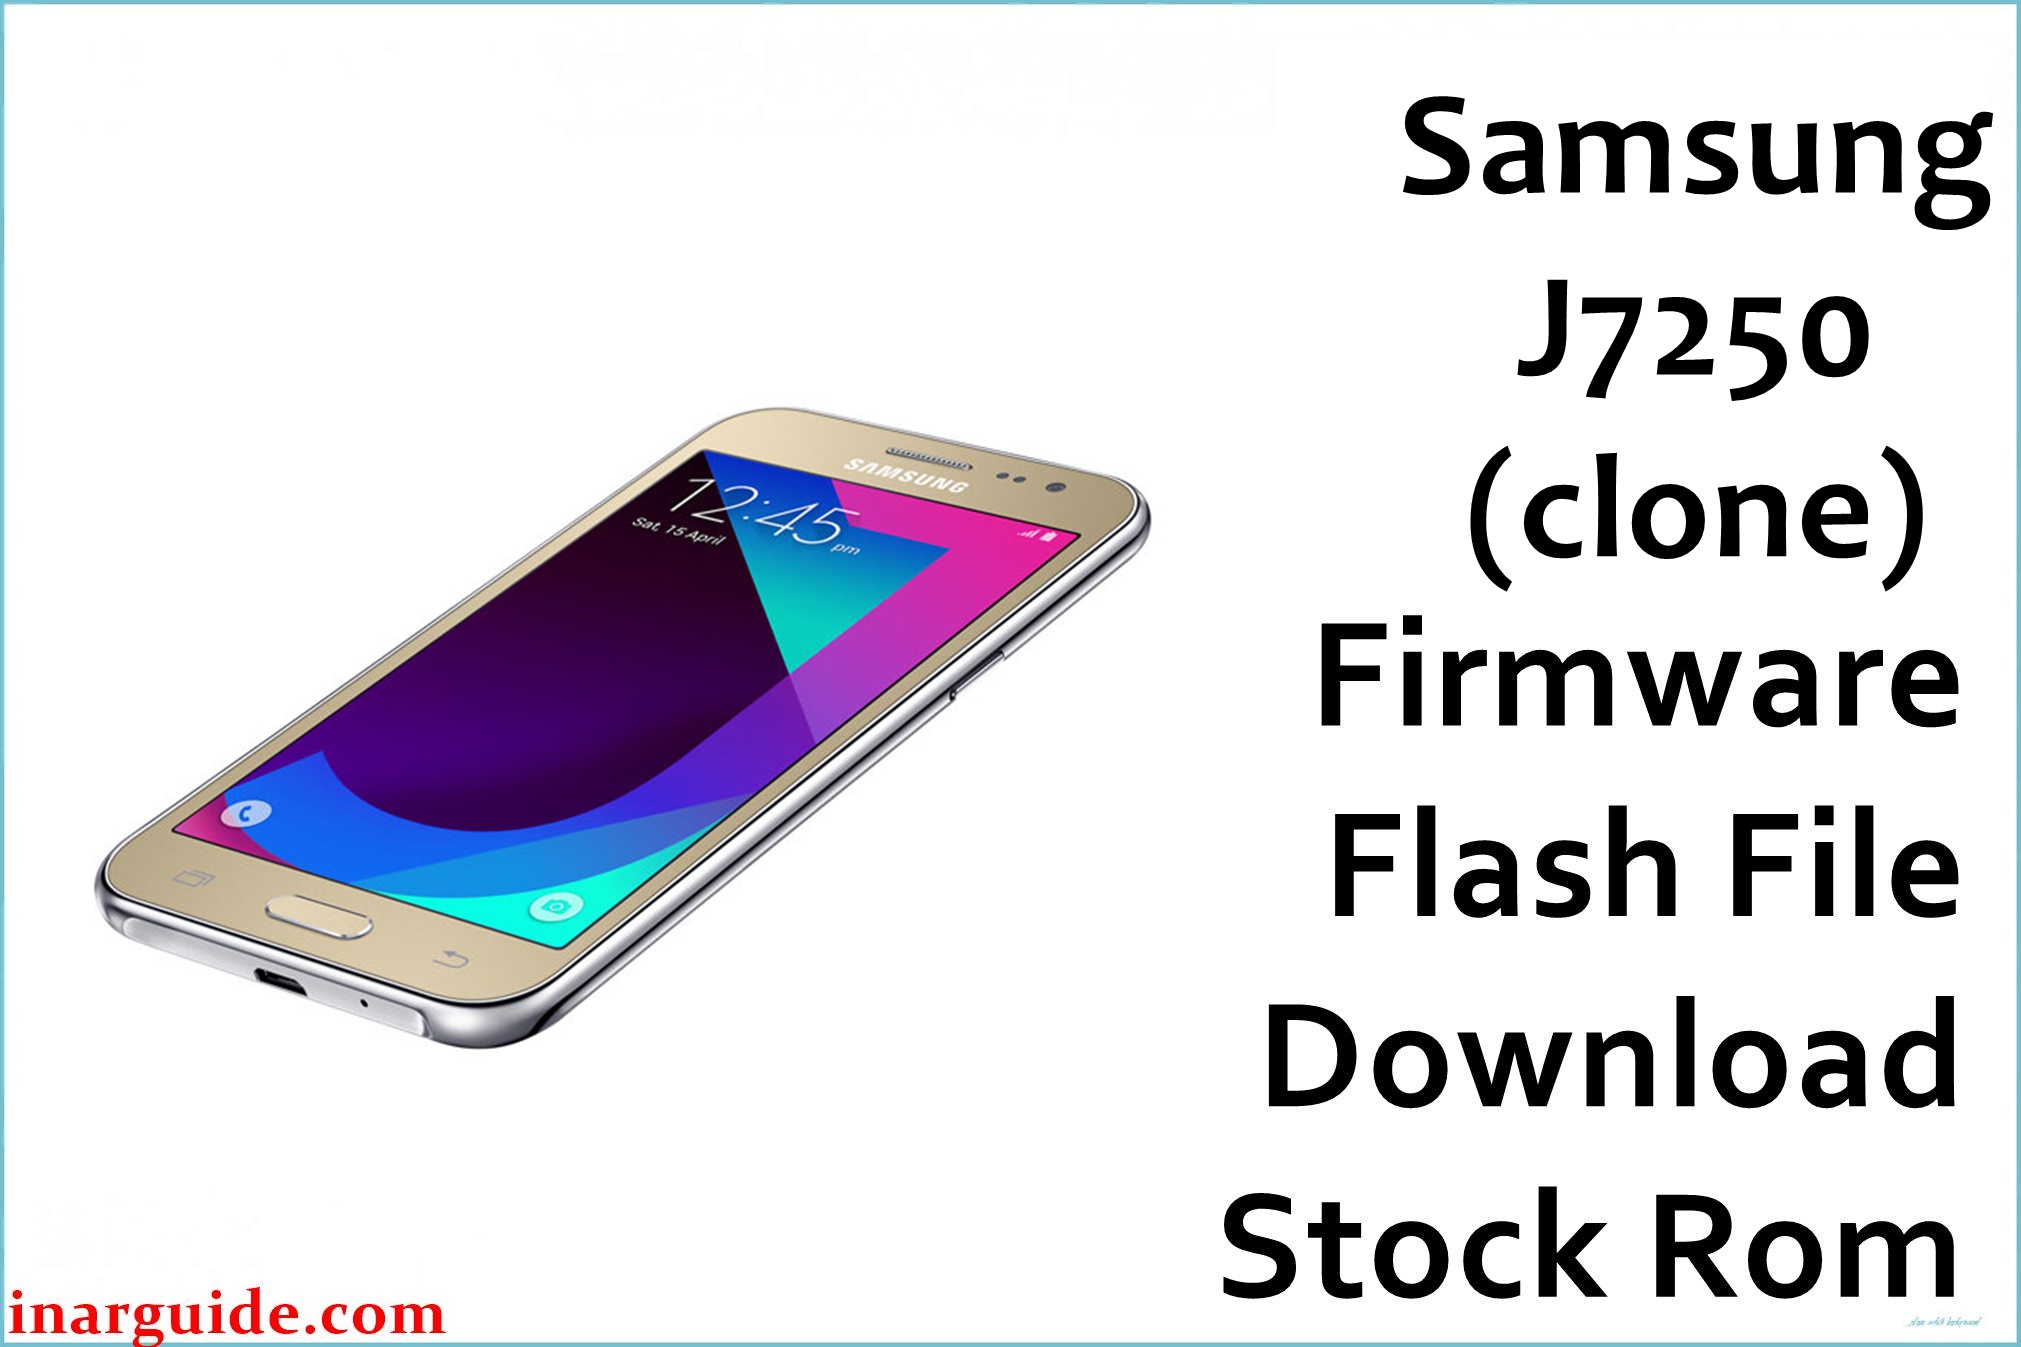 Samsung J7250 clone